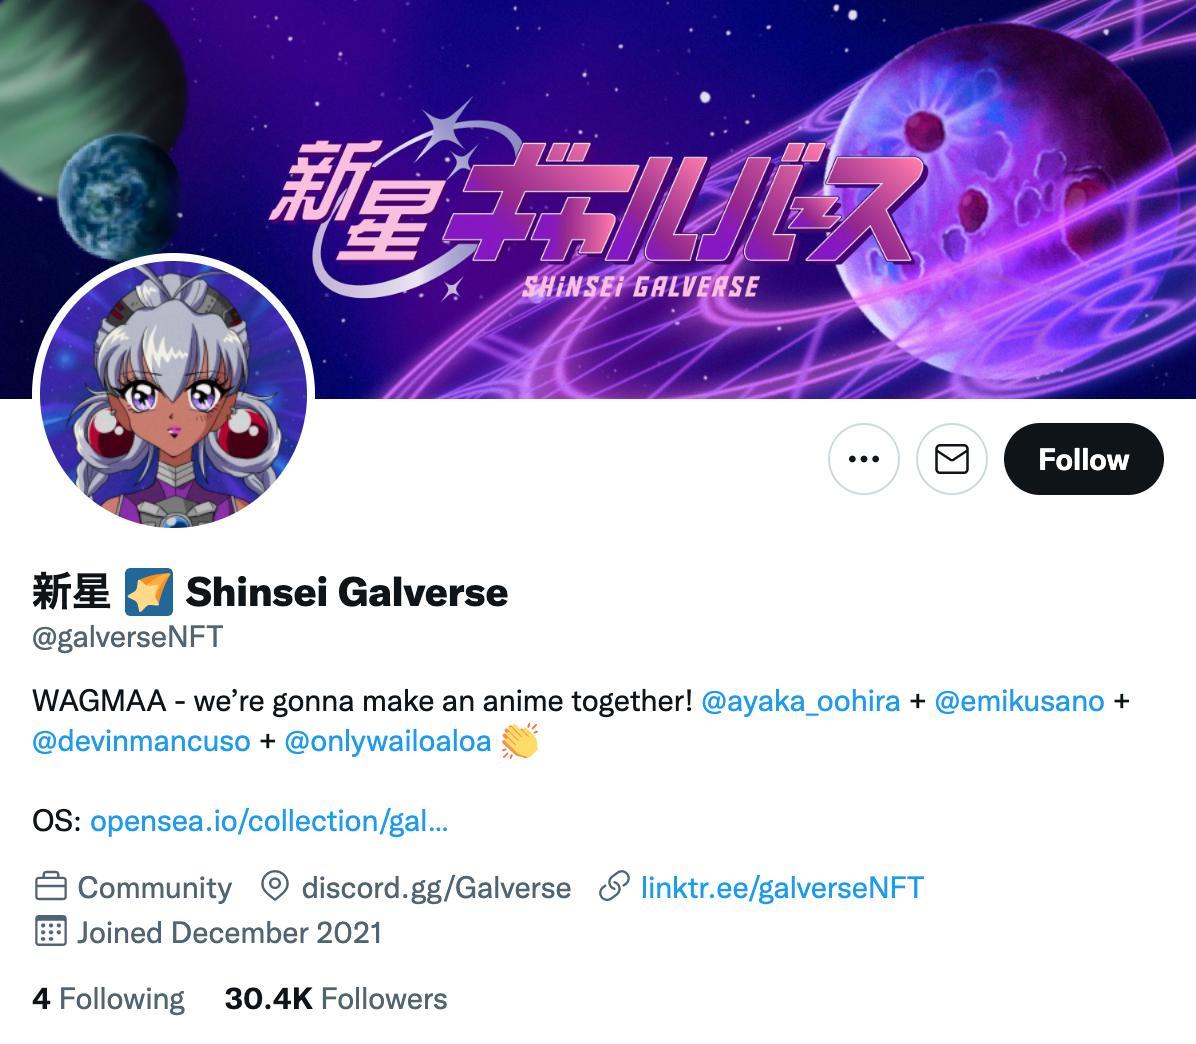 Official Twitter (@galverseNFT) of Shinsei Galverse